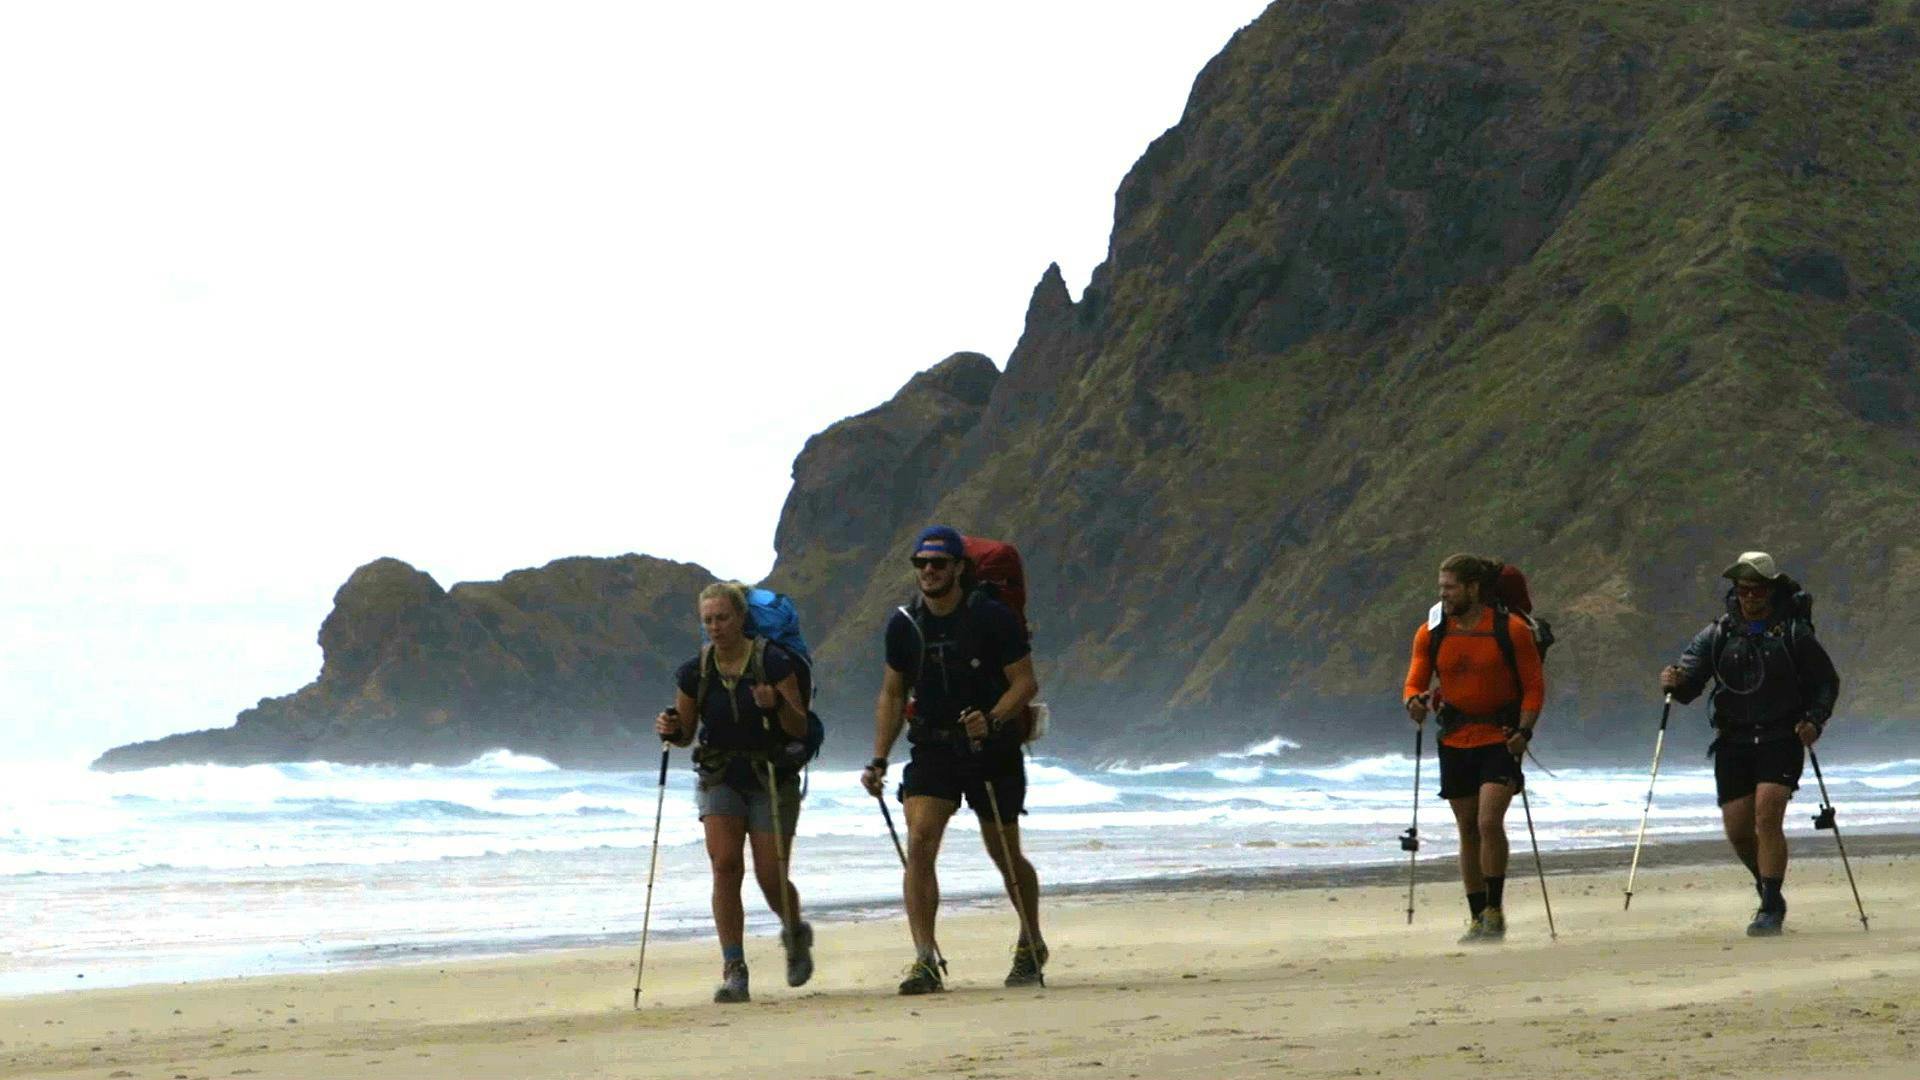 Ep 1 | Thru Hiking New Zealand's Te Araroa Trail